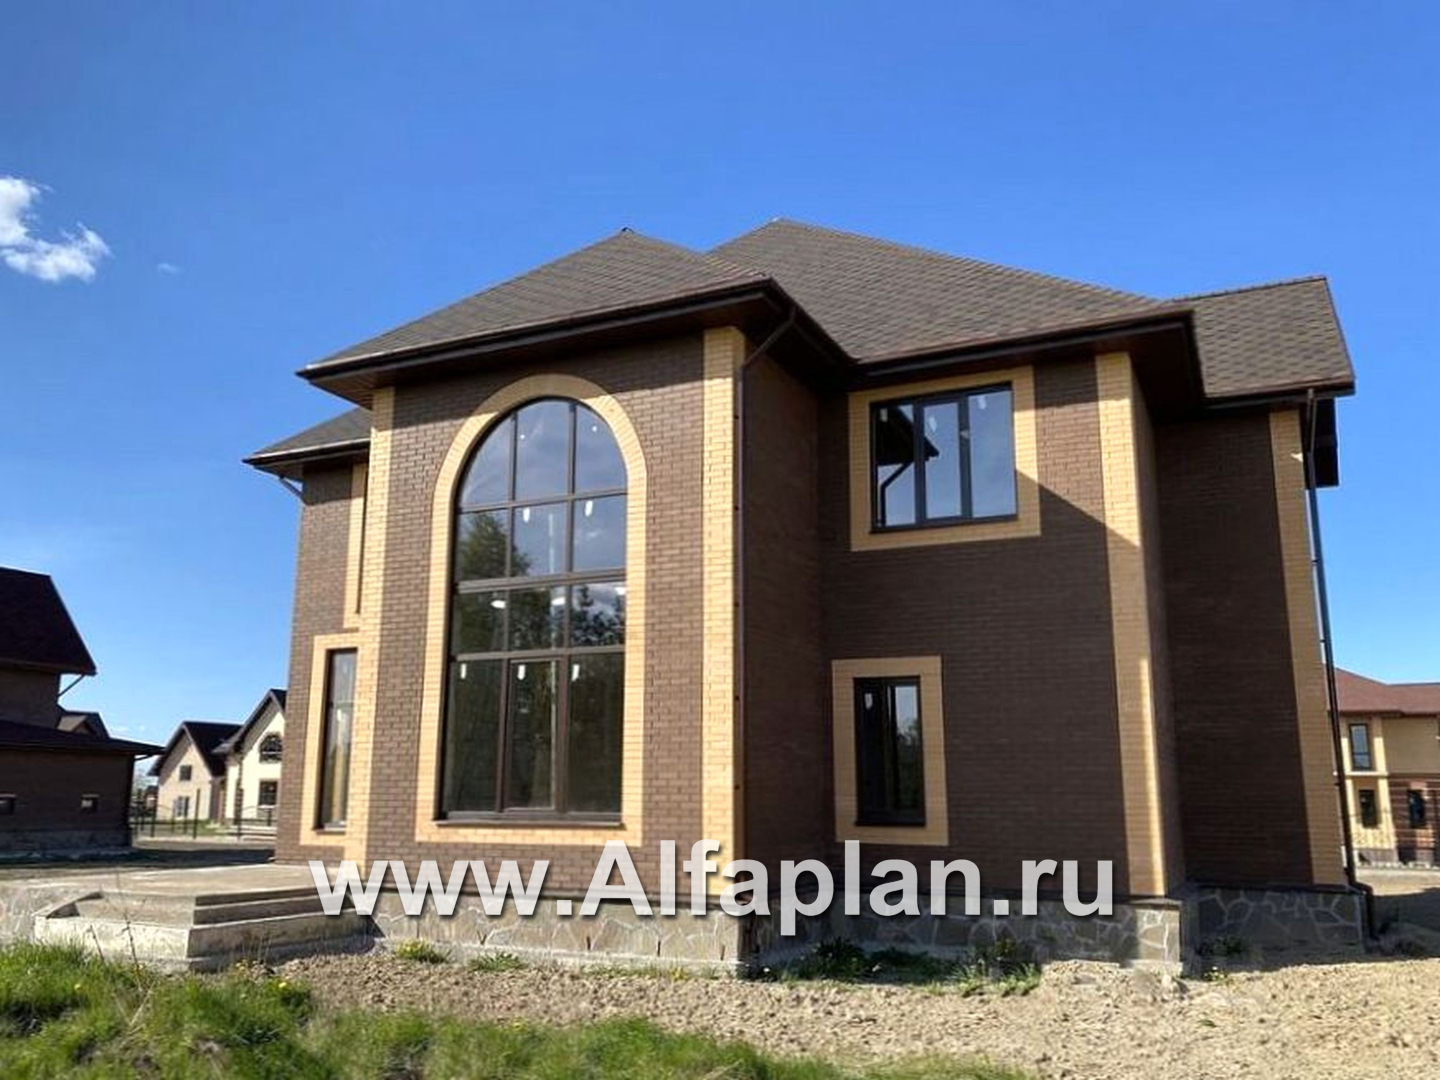 Проекты домов Альфаплан - «Воронцов»- коттедж с комфортной планировкой - дополнительное изображение №3